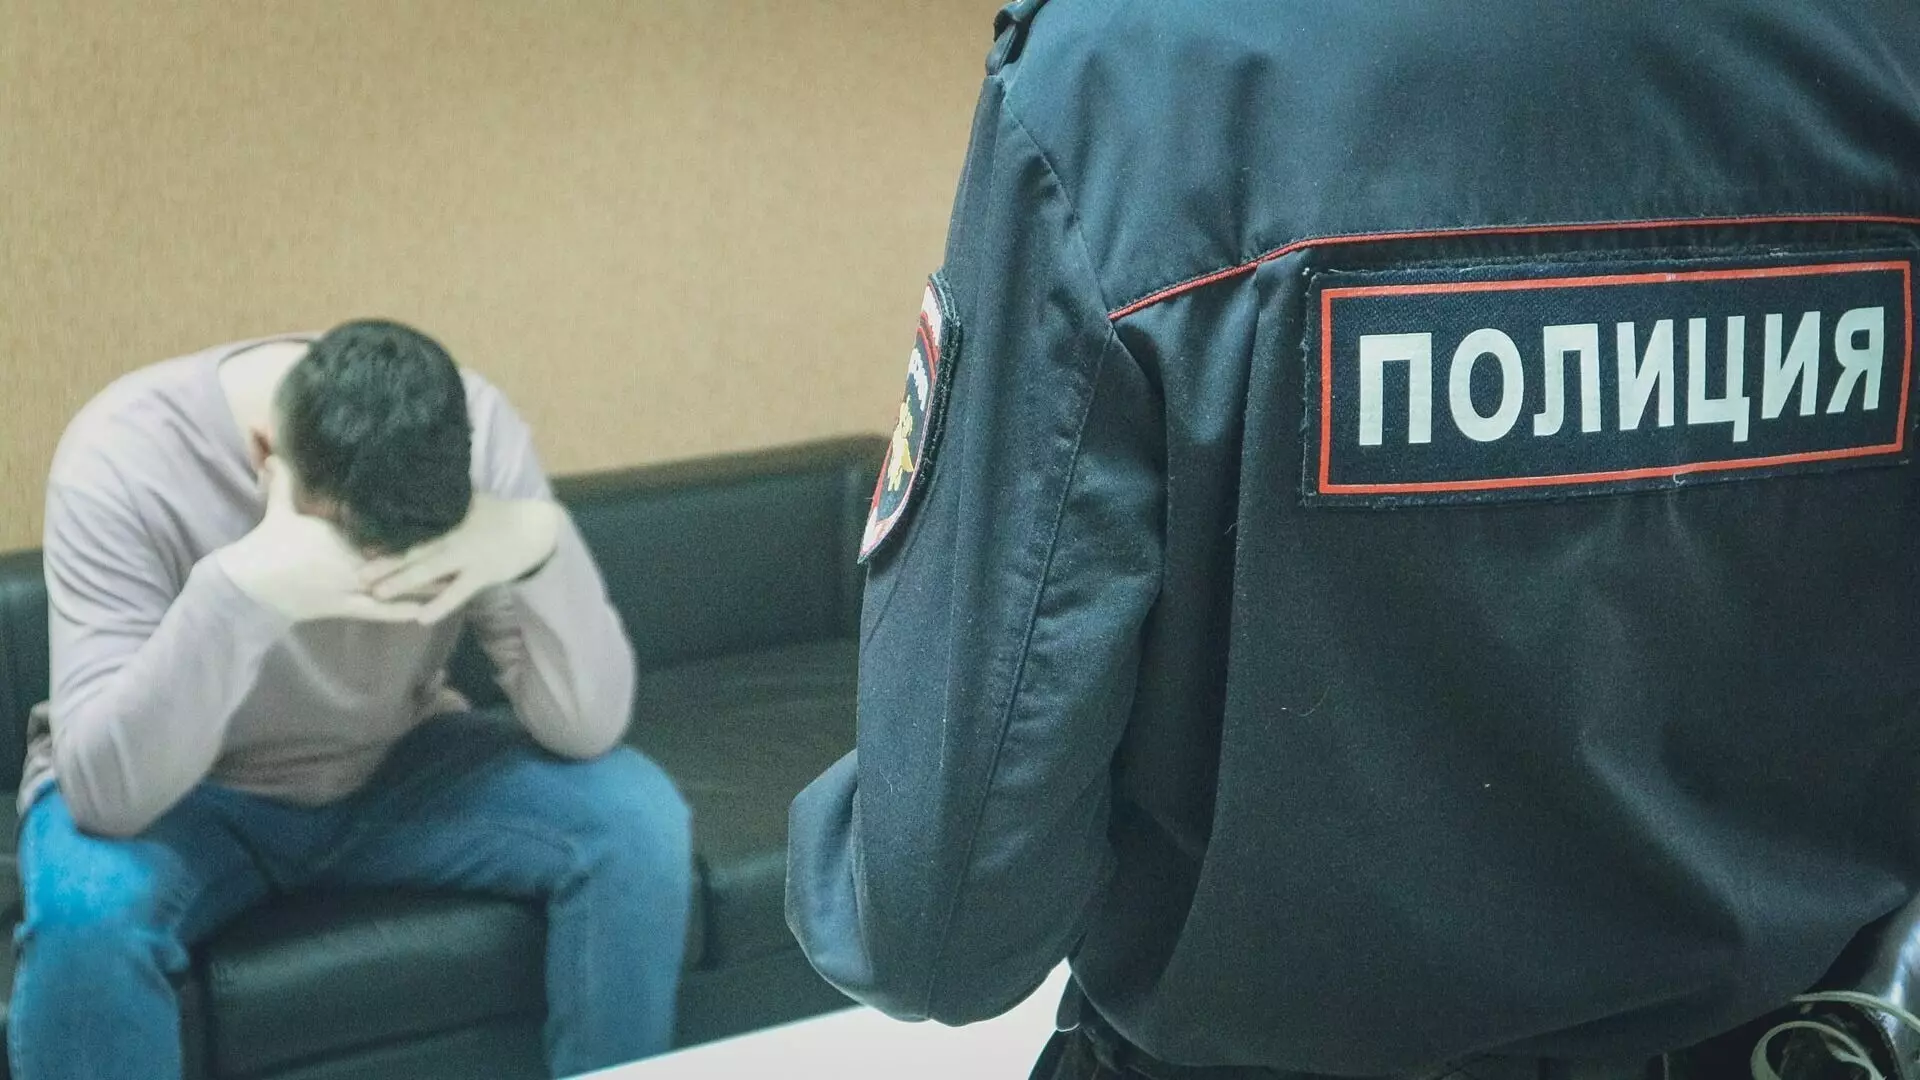 Нижегородский район стал самым криминальным в Нижнем Новгороде